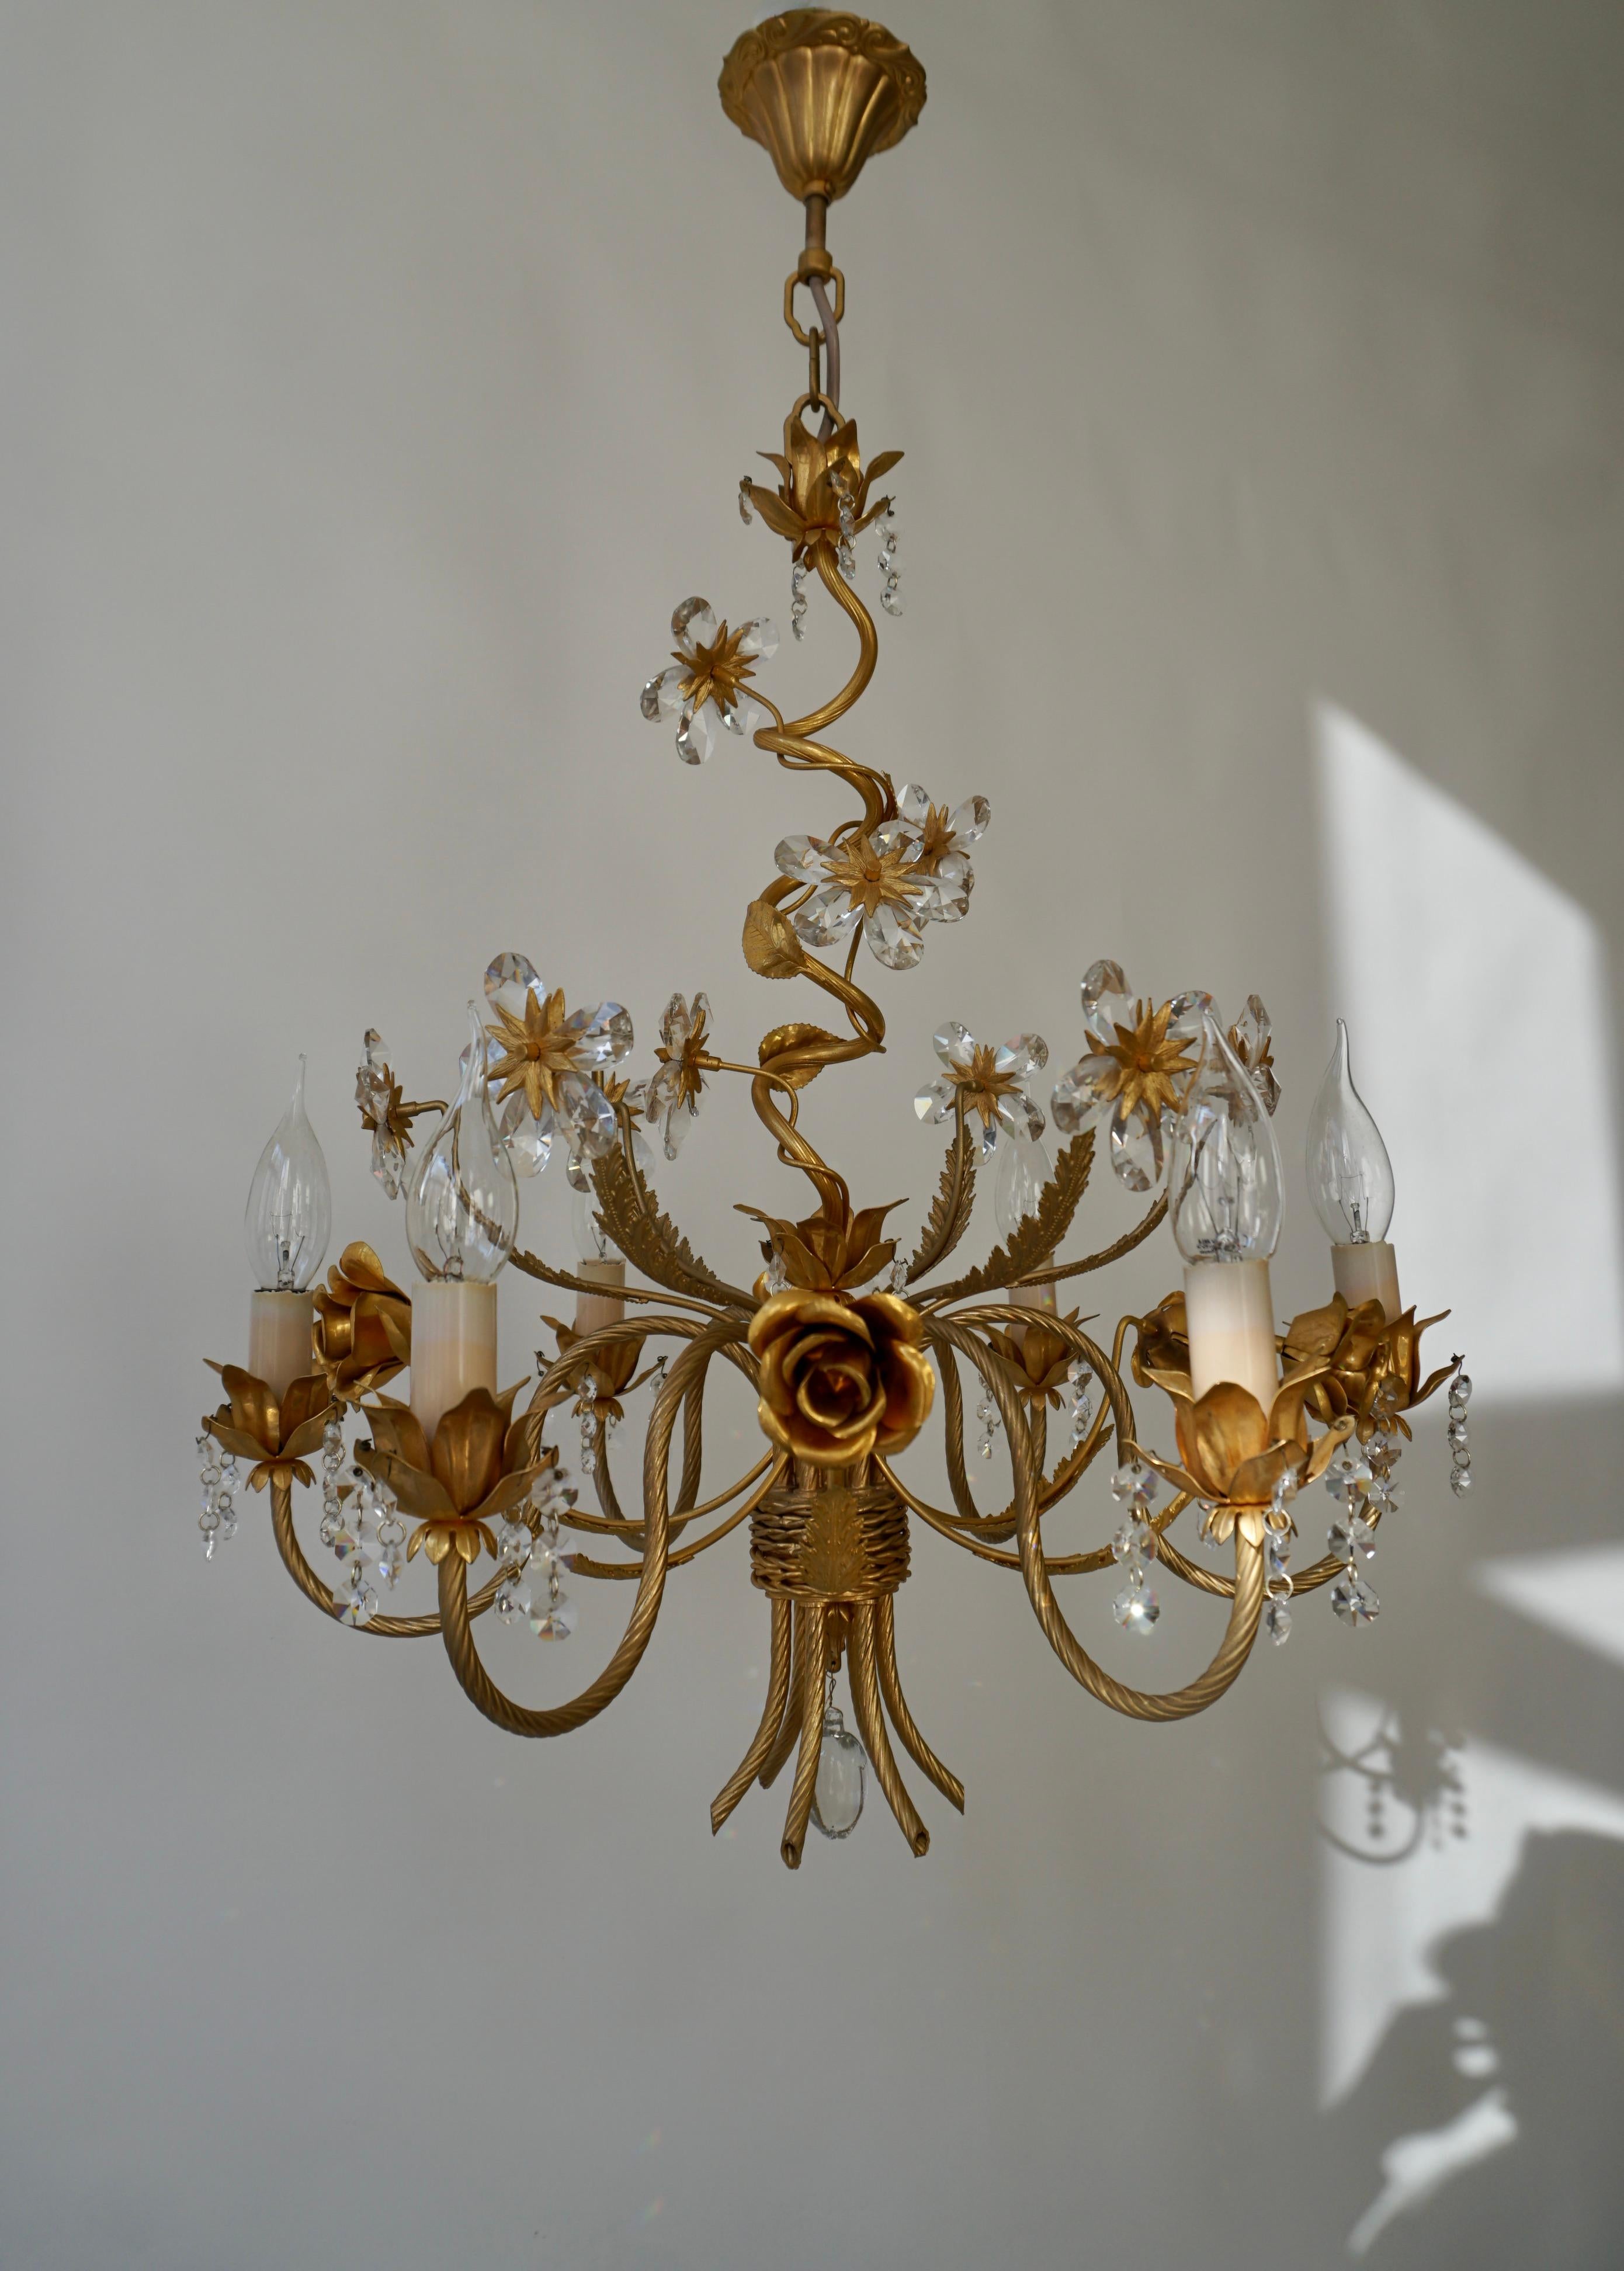 Un magnifique lustre élégant avec des fleurs en cristal et des roses dorées.

Lustre à six bras de lumière de style Régence hollywoodienne, fabriqué en Italie au milieu du siècle dernier (années 1960 et 1970). Le lustre dispose de six douilles pour